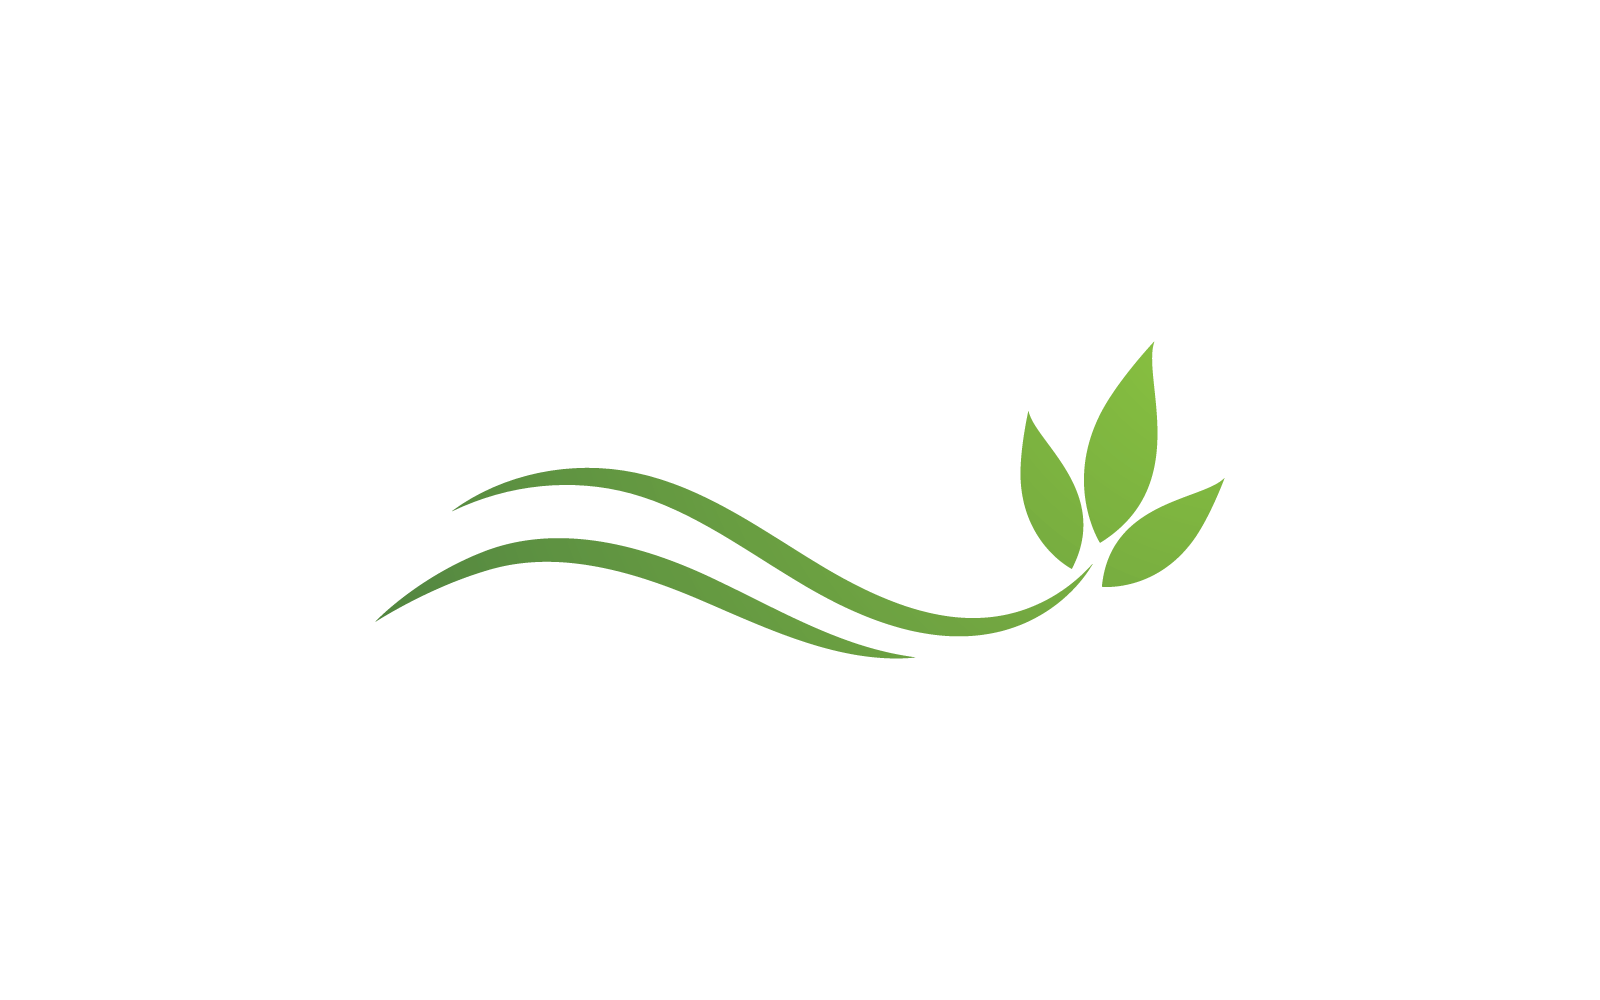 Eco green leaf illustration nature logo flat design